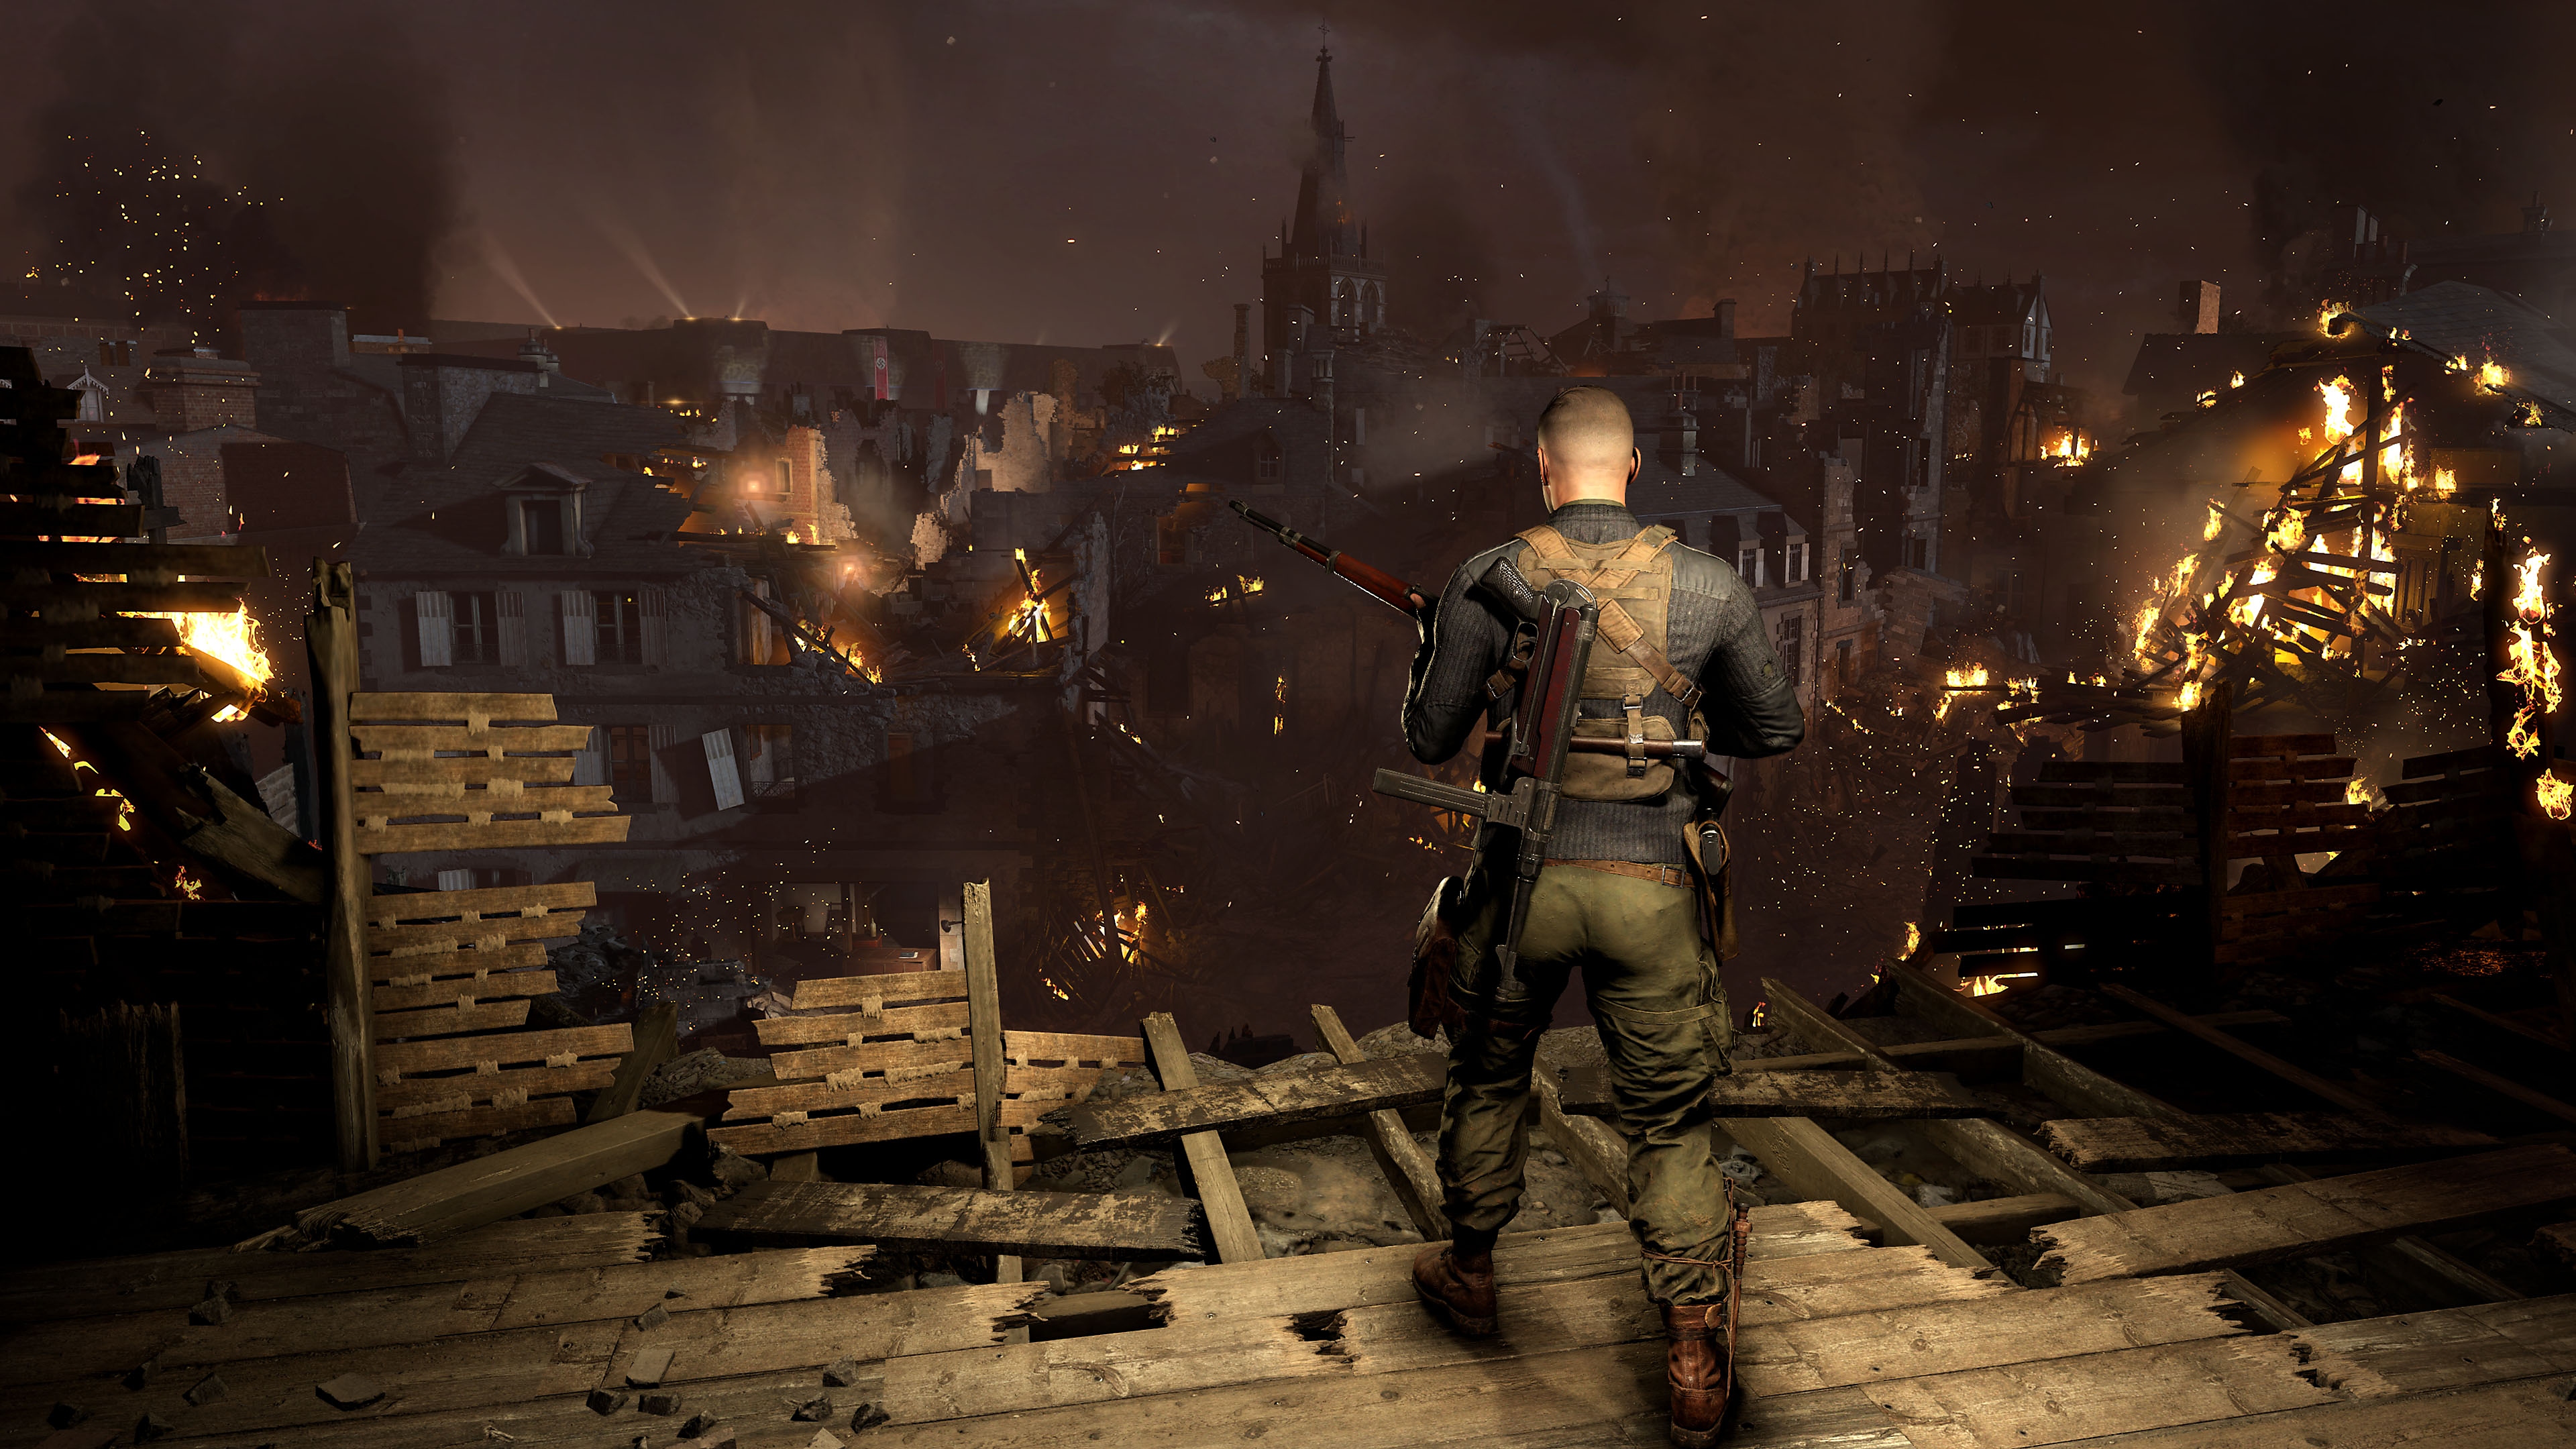 Captura de pantalla de Sniper Elite 5 mostrando a un personaje observando un pueblo con edificios en llama